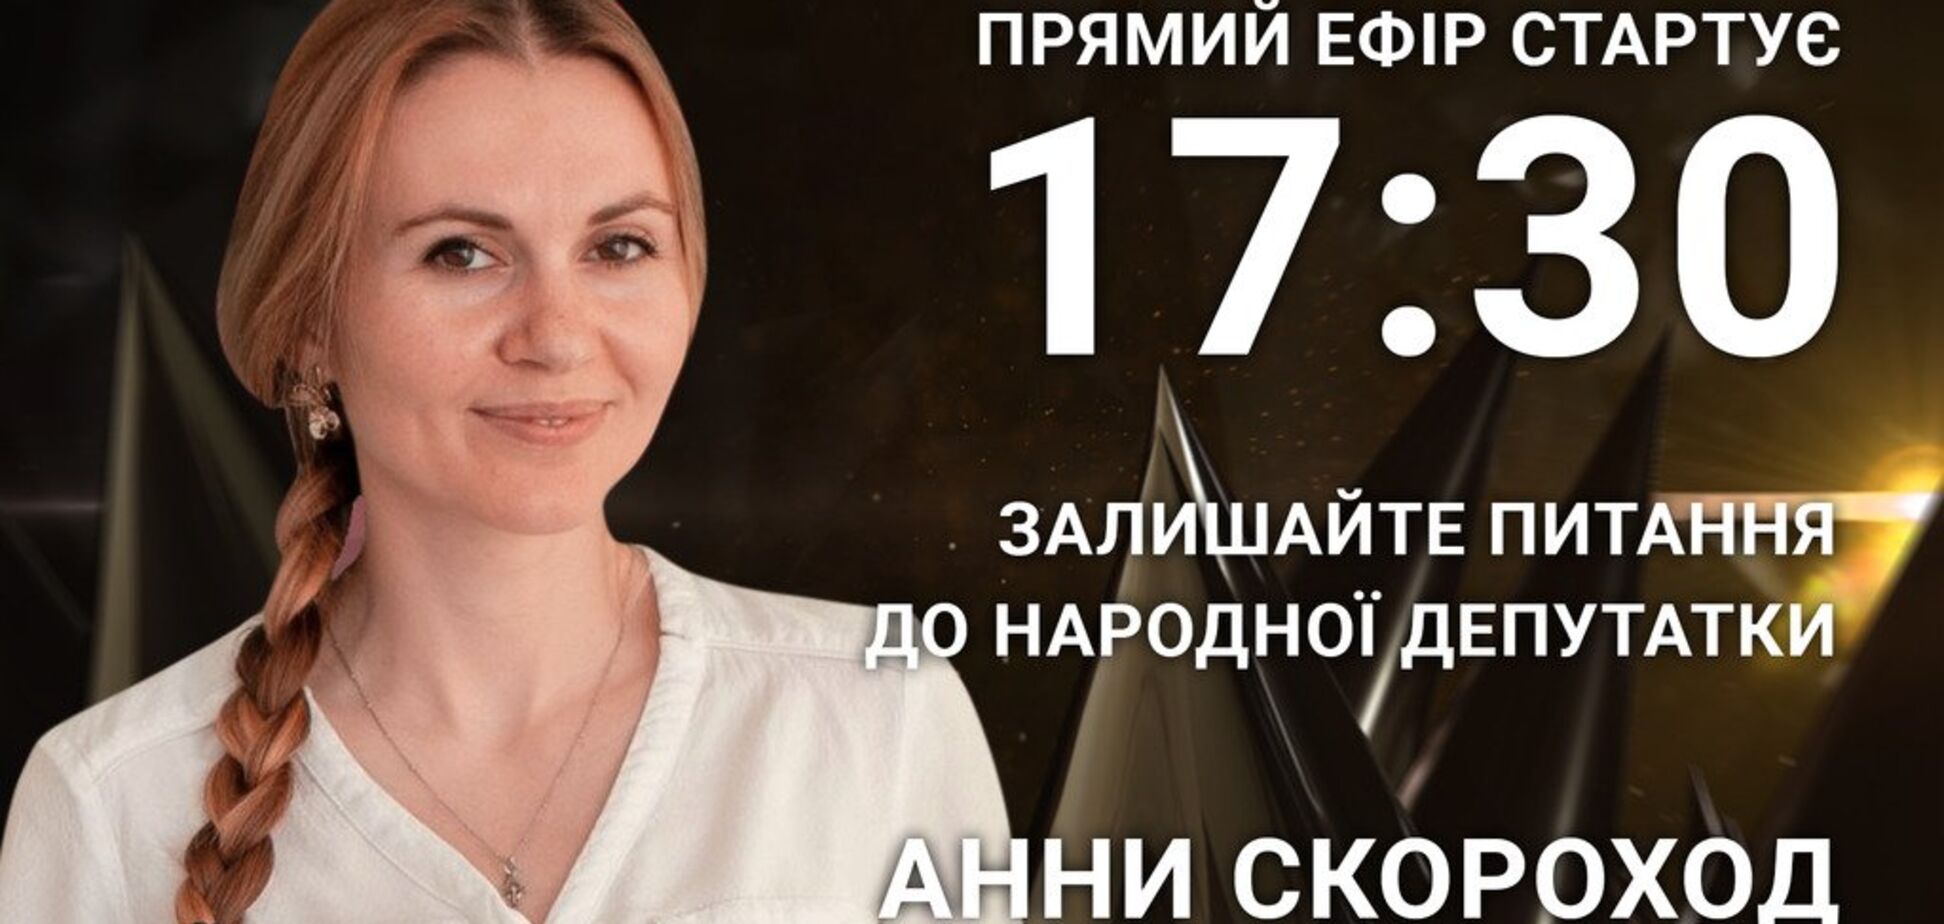 Анна Скороход: задайте народному депутату острый вопрос